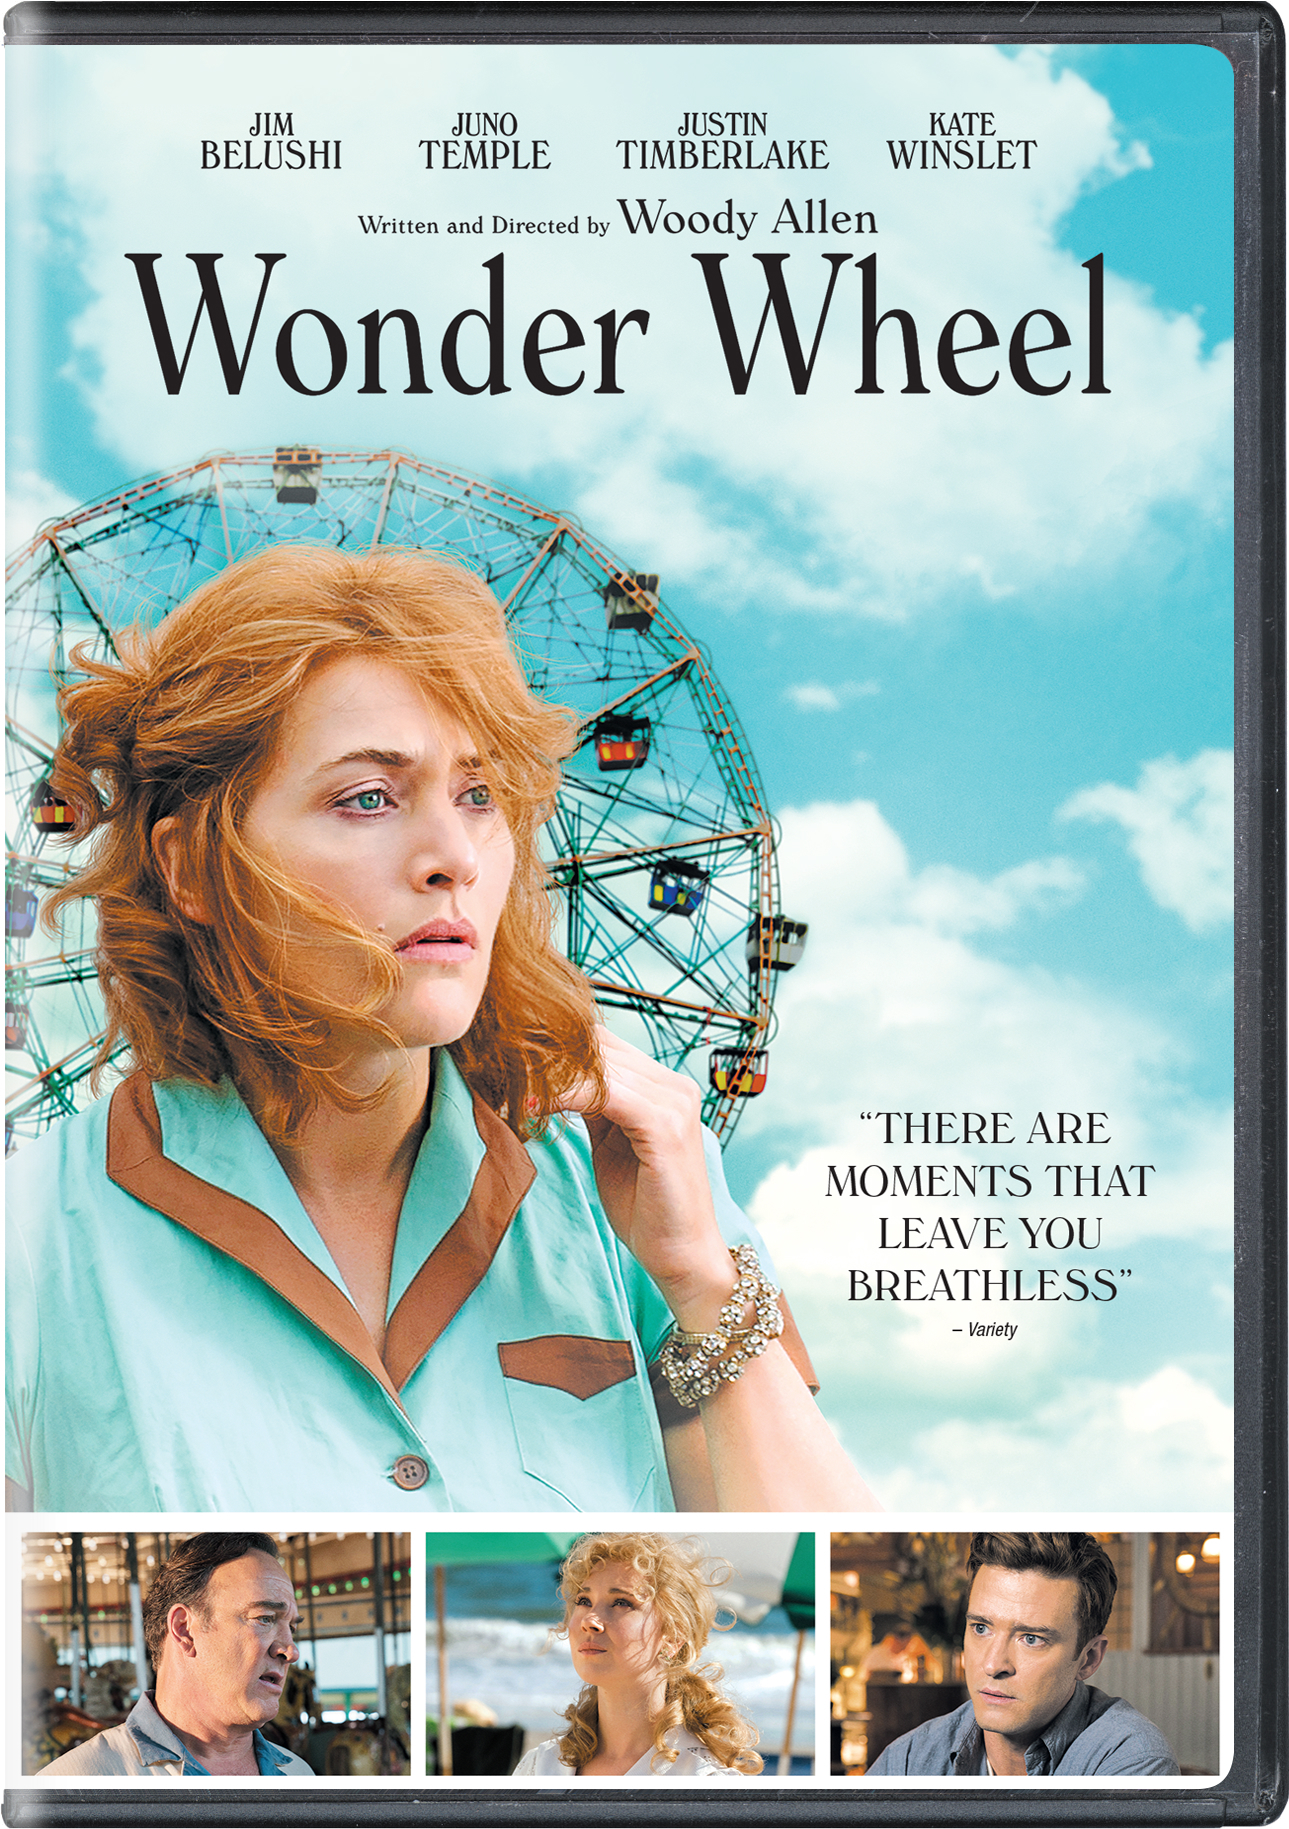 Wonder Wheel - DVD [ 2017 ]  - Drama Movies On DVD - Movies On GRUV